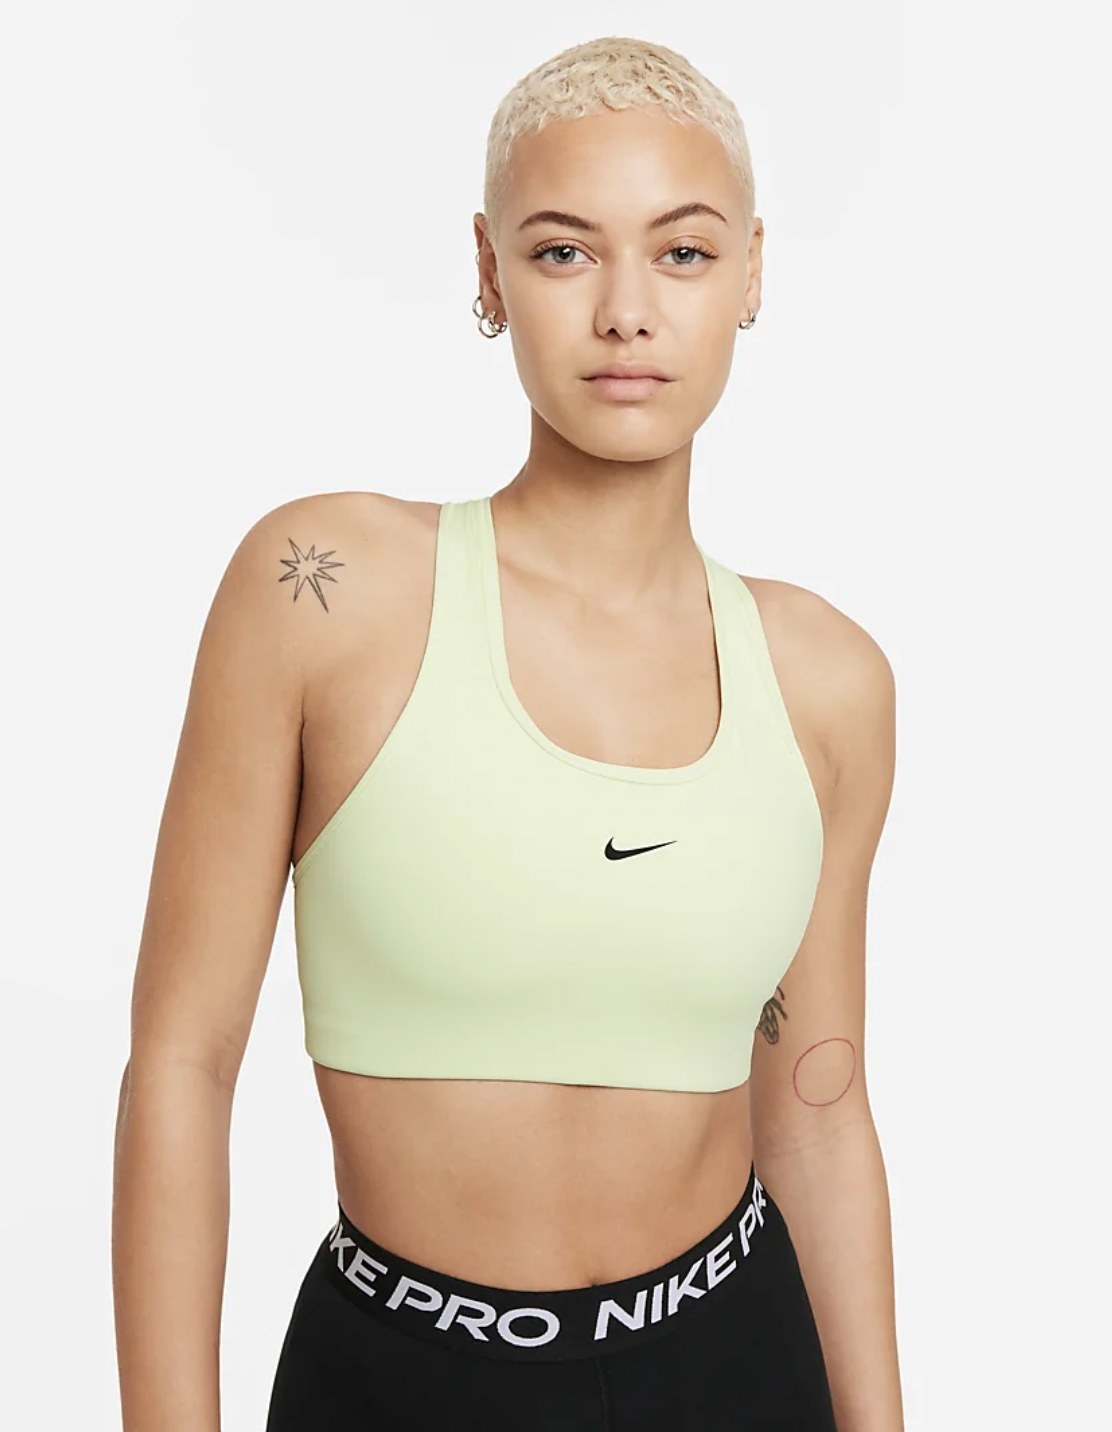 Model wearing the green sports bra